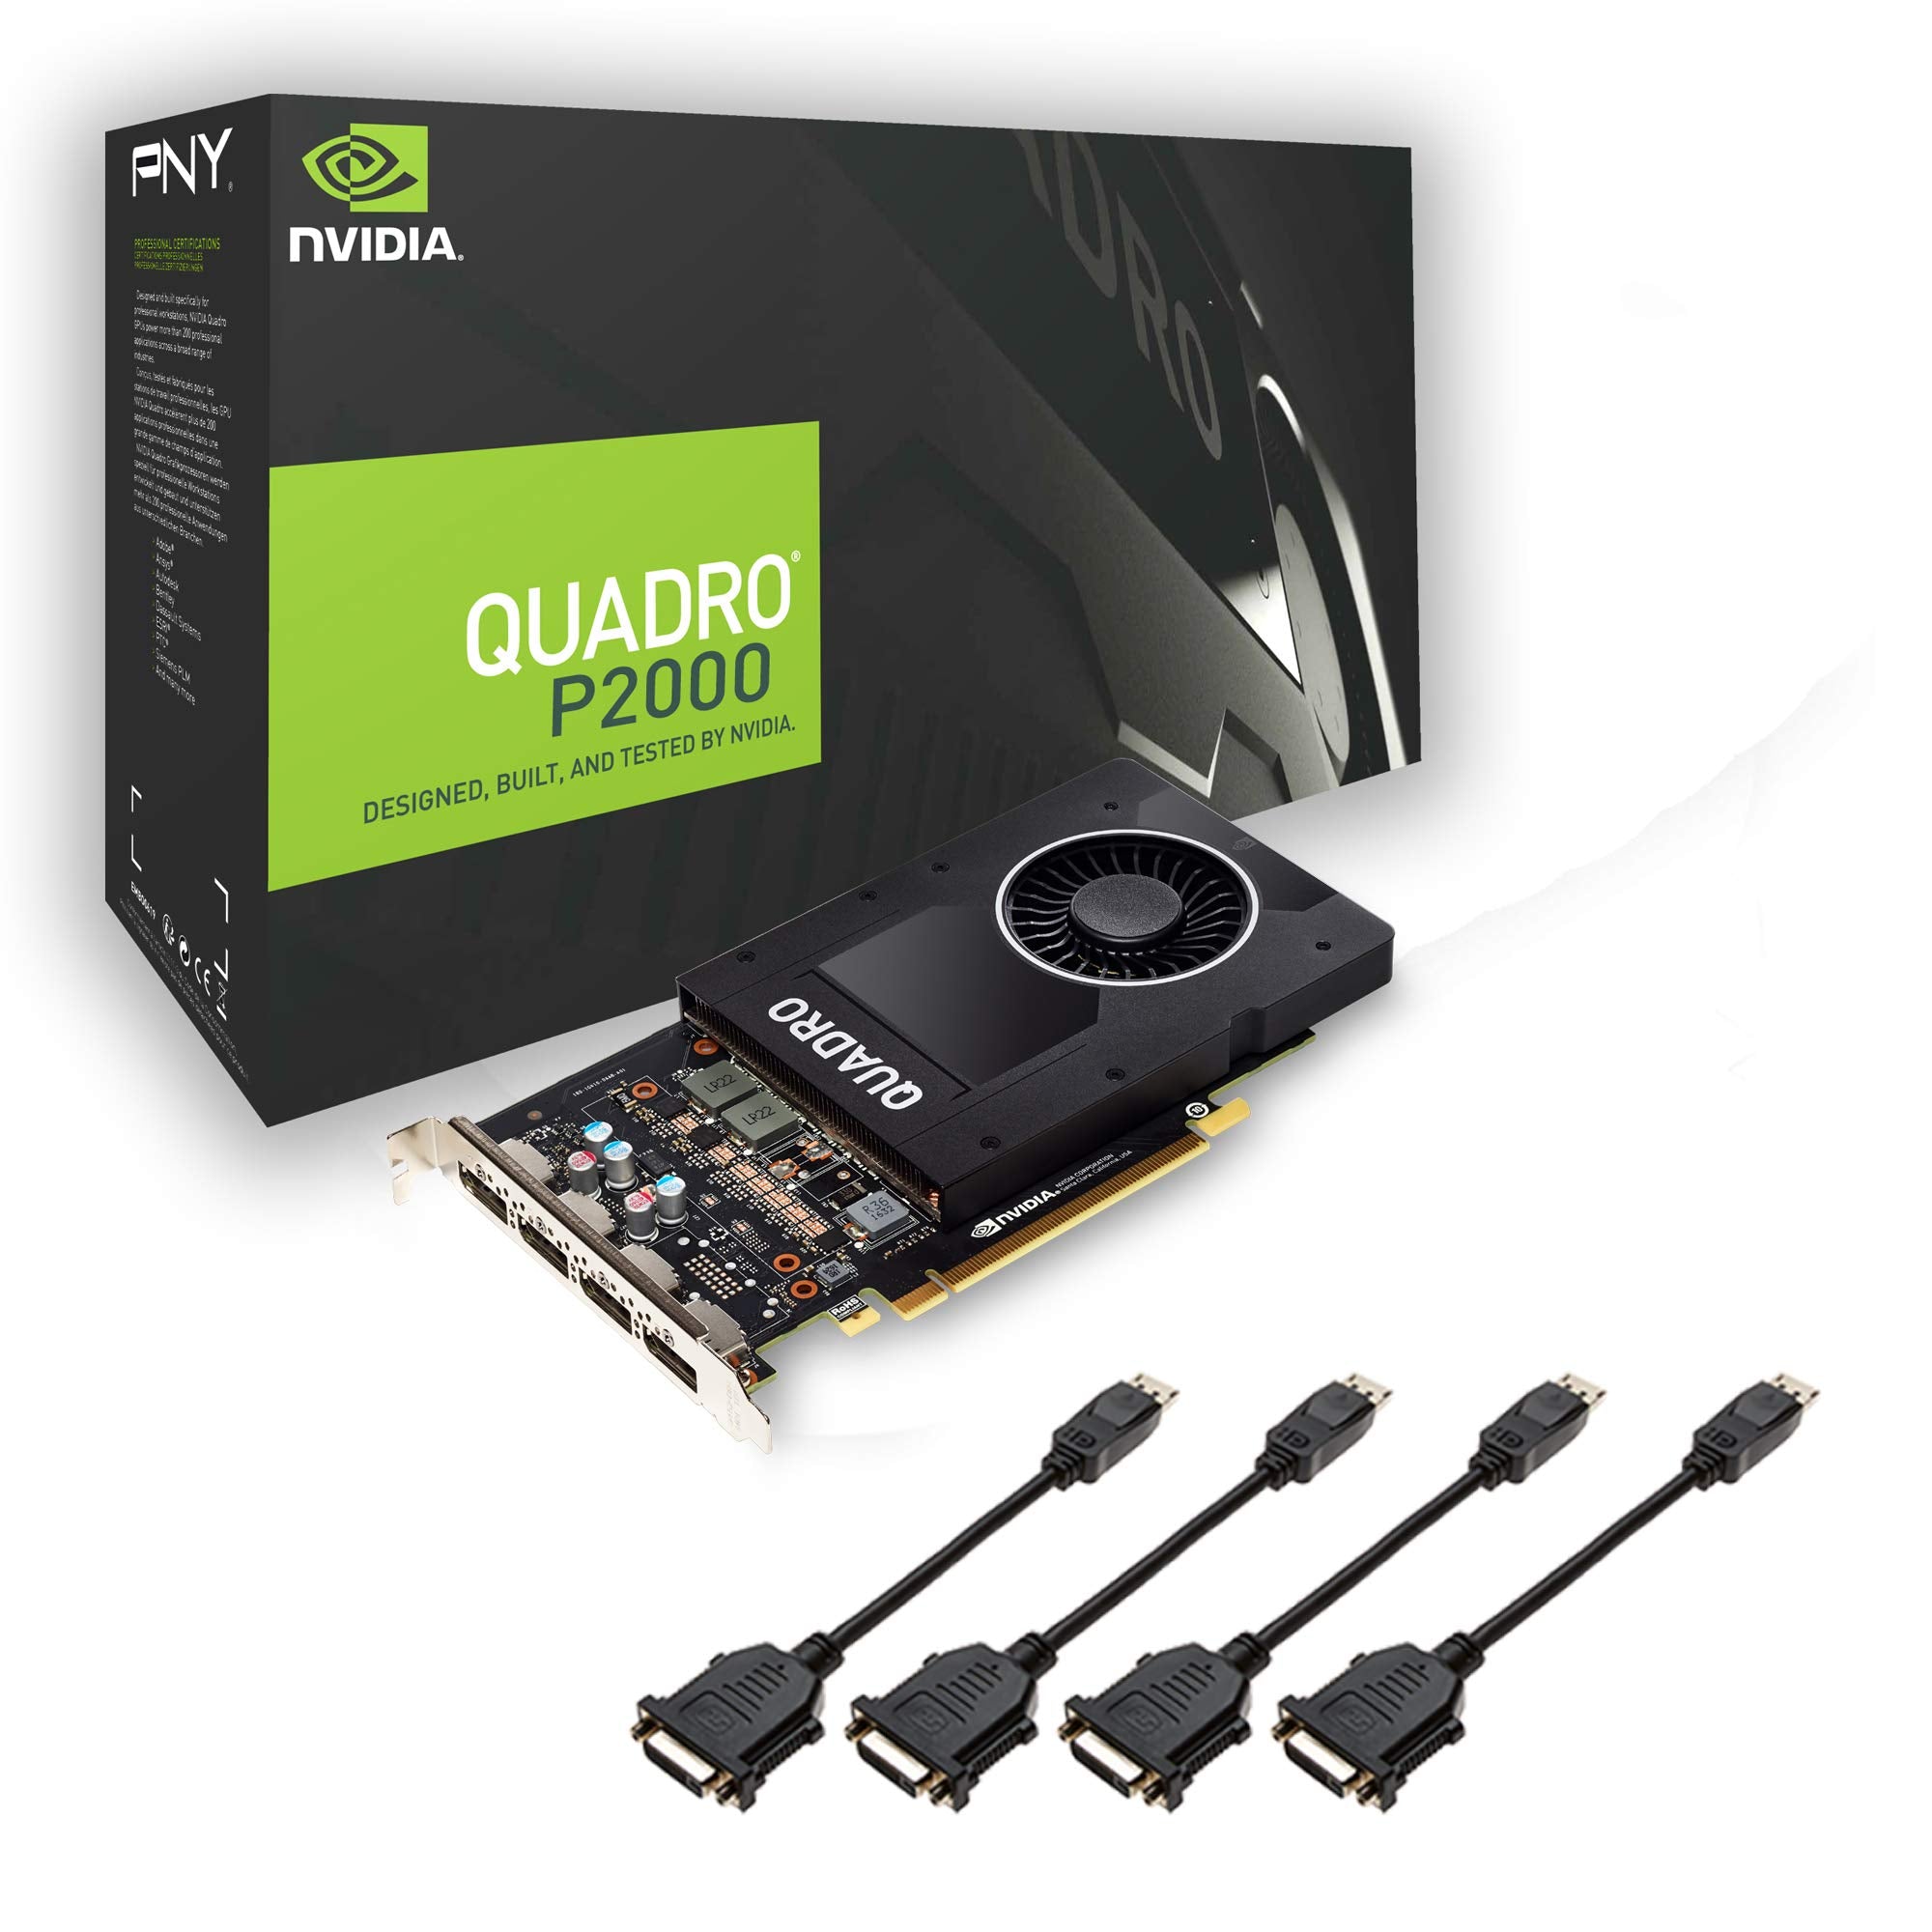 PNY NVIDIA Quadro P2000 4x DP 5 GB GDDR5 PCI Express Professional Grap